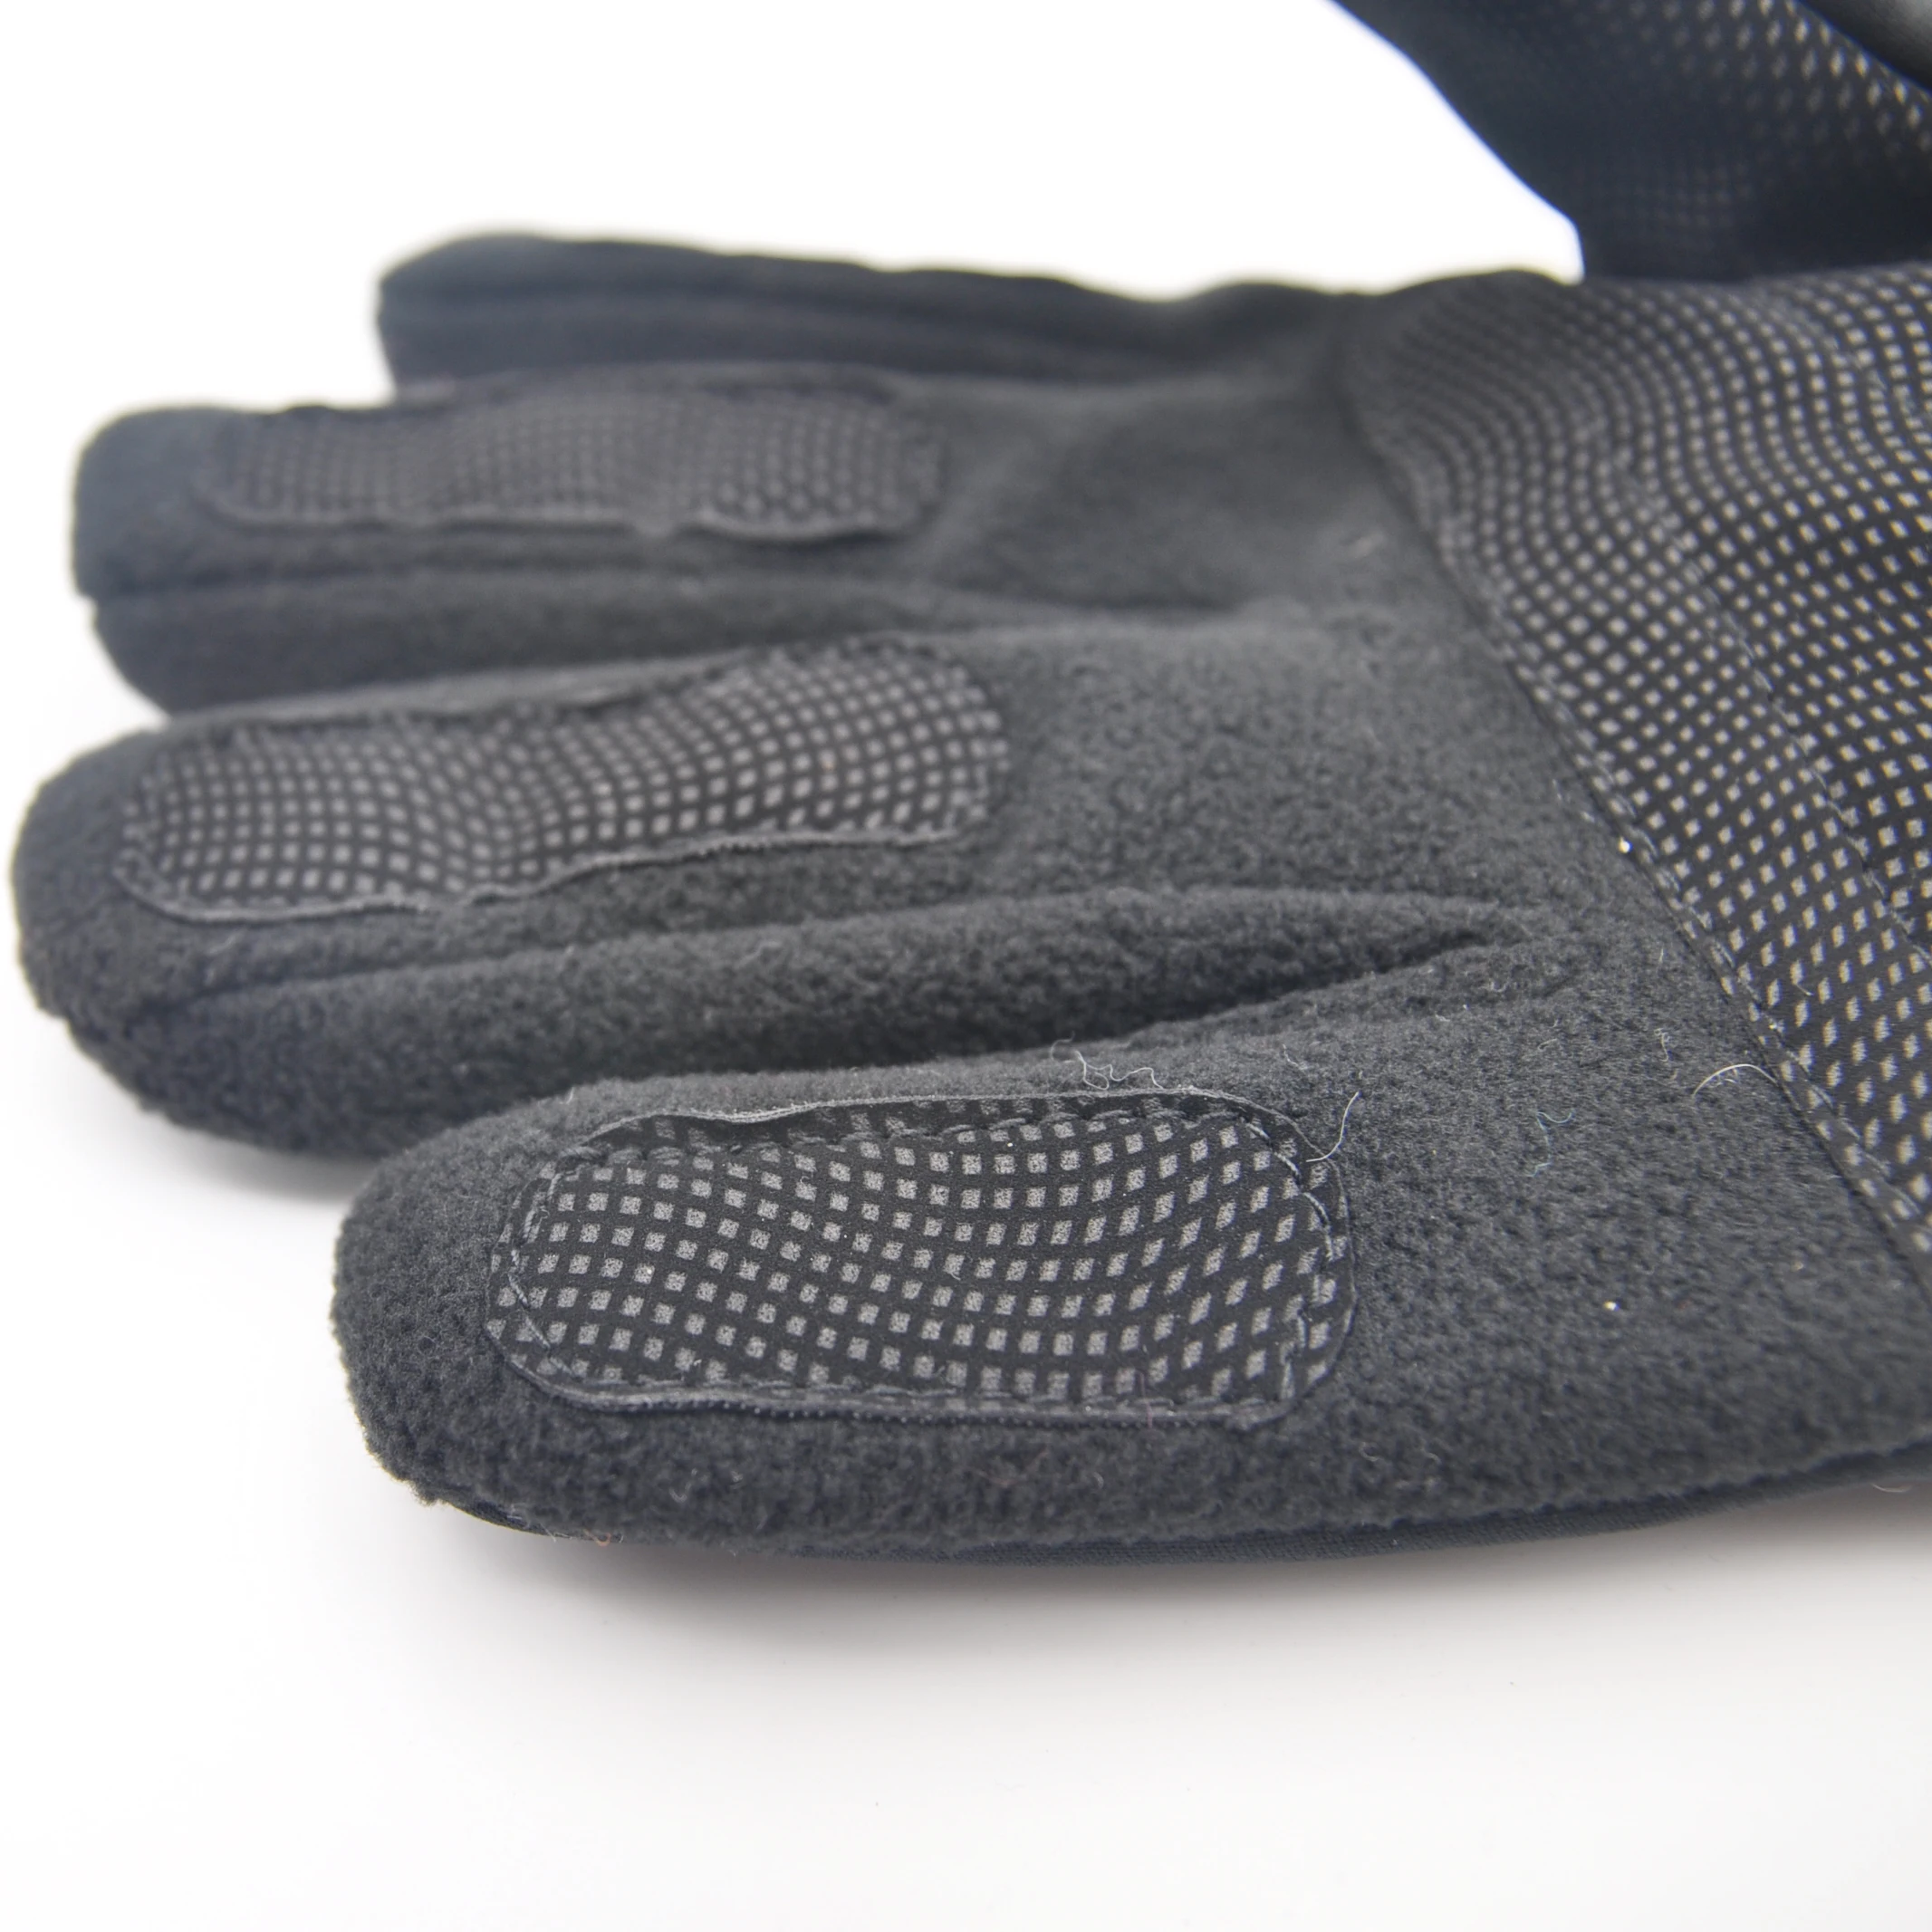 Зимние перчатки для взрослых Повседневная жизнь вязаные флисовые перчатки с полиуретаном 3M Thinsulate перчатки